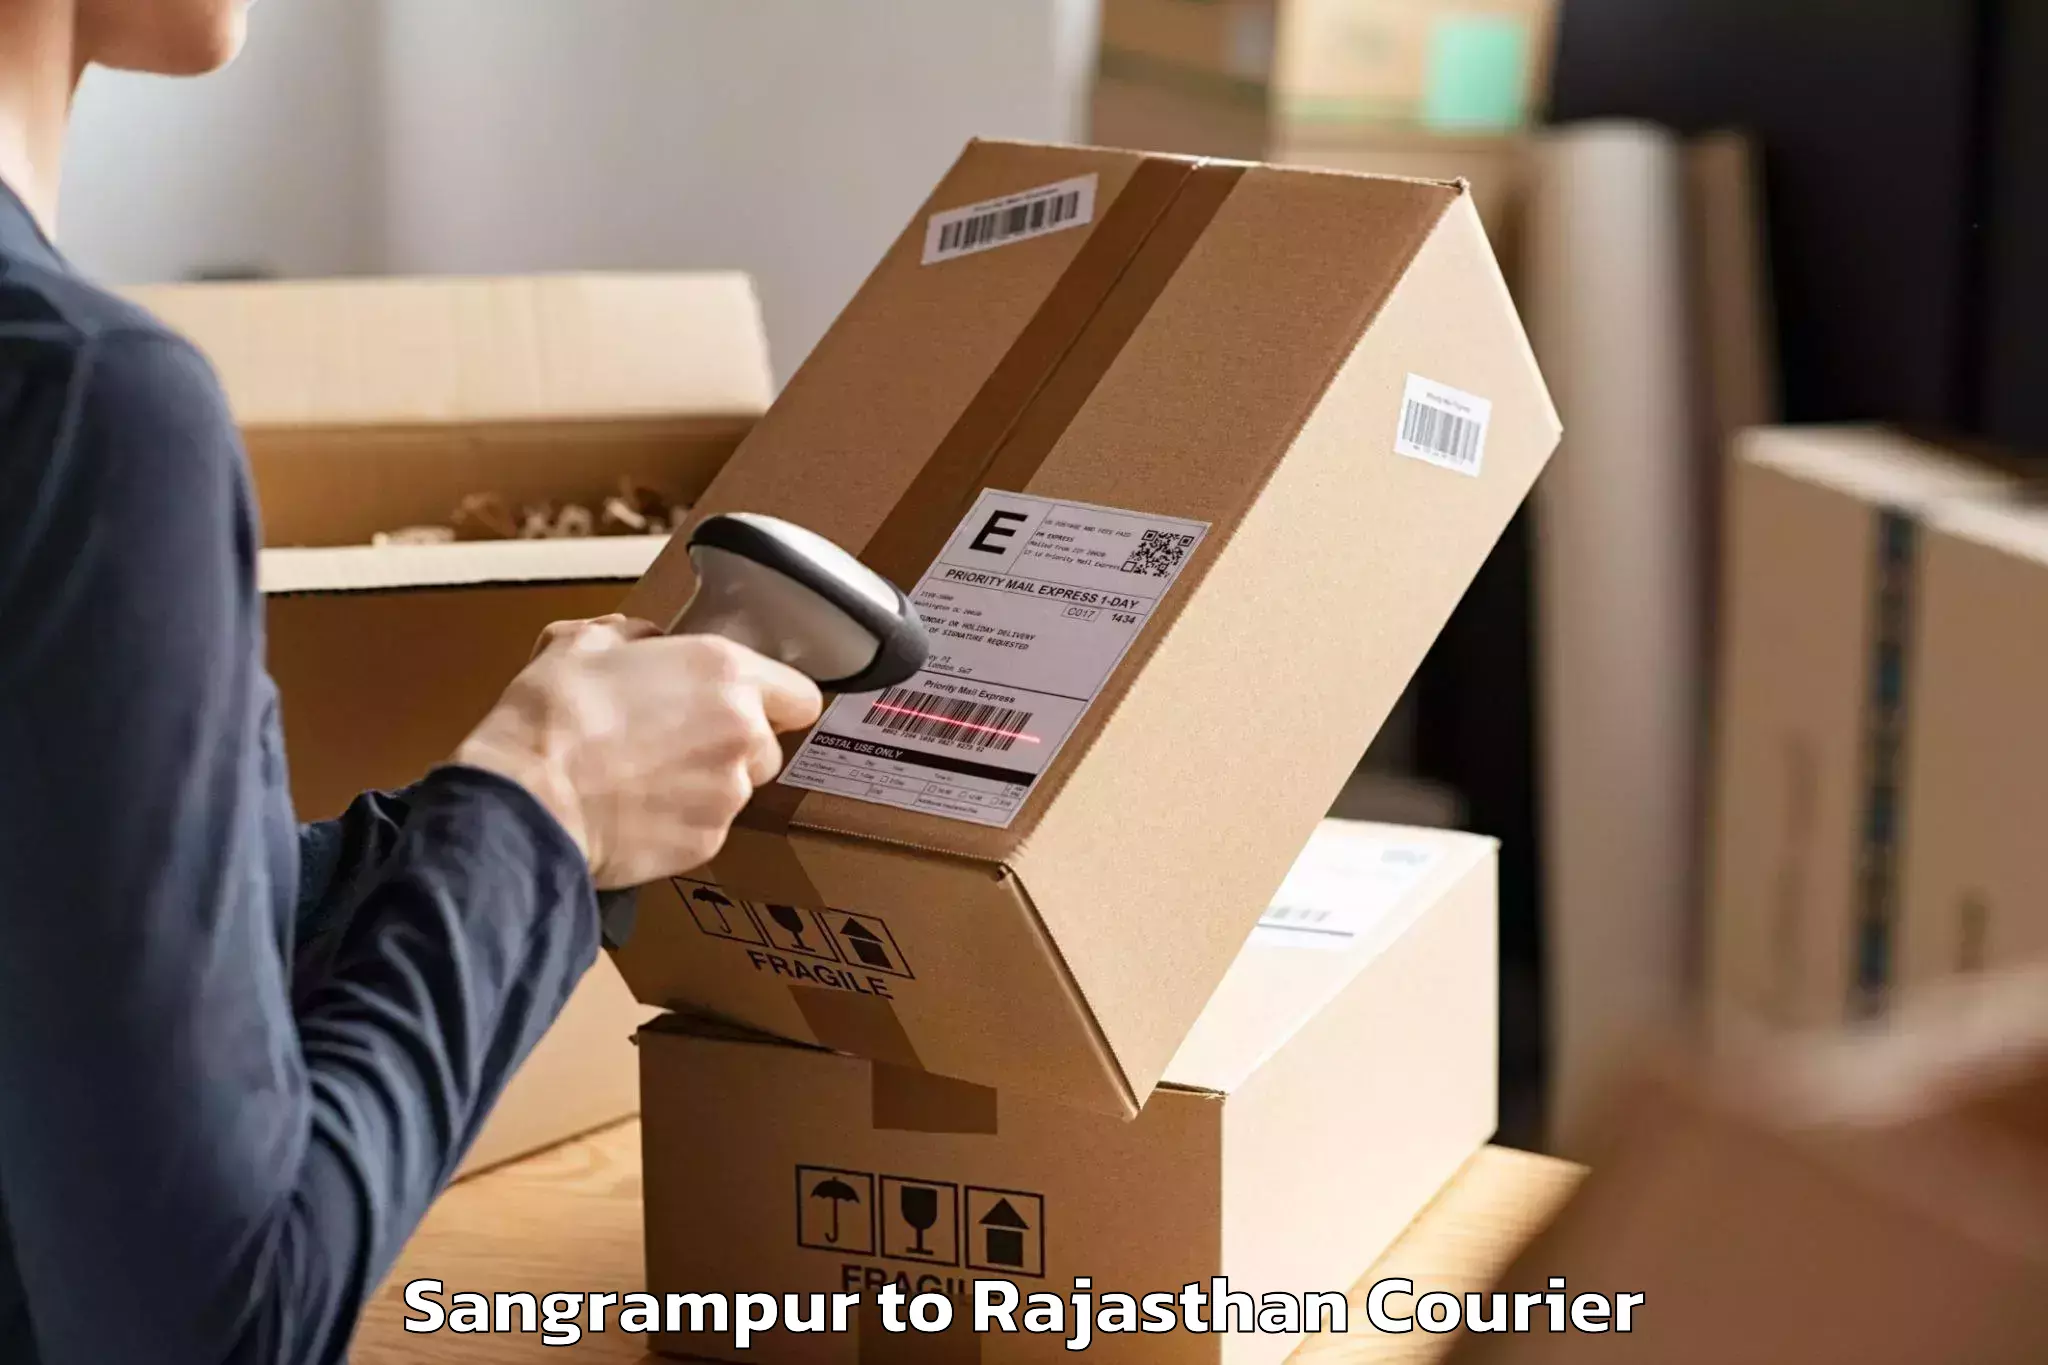 Furniture moving experts Sangrampur to Mahwa